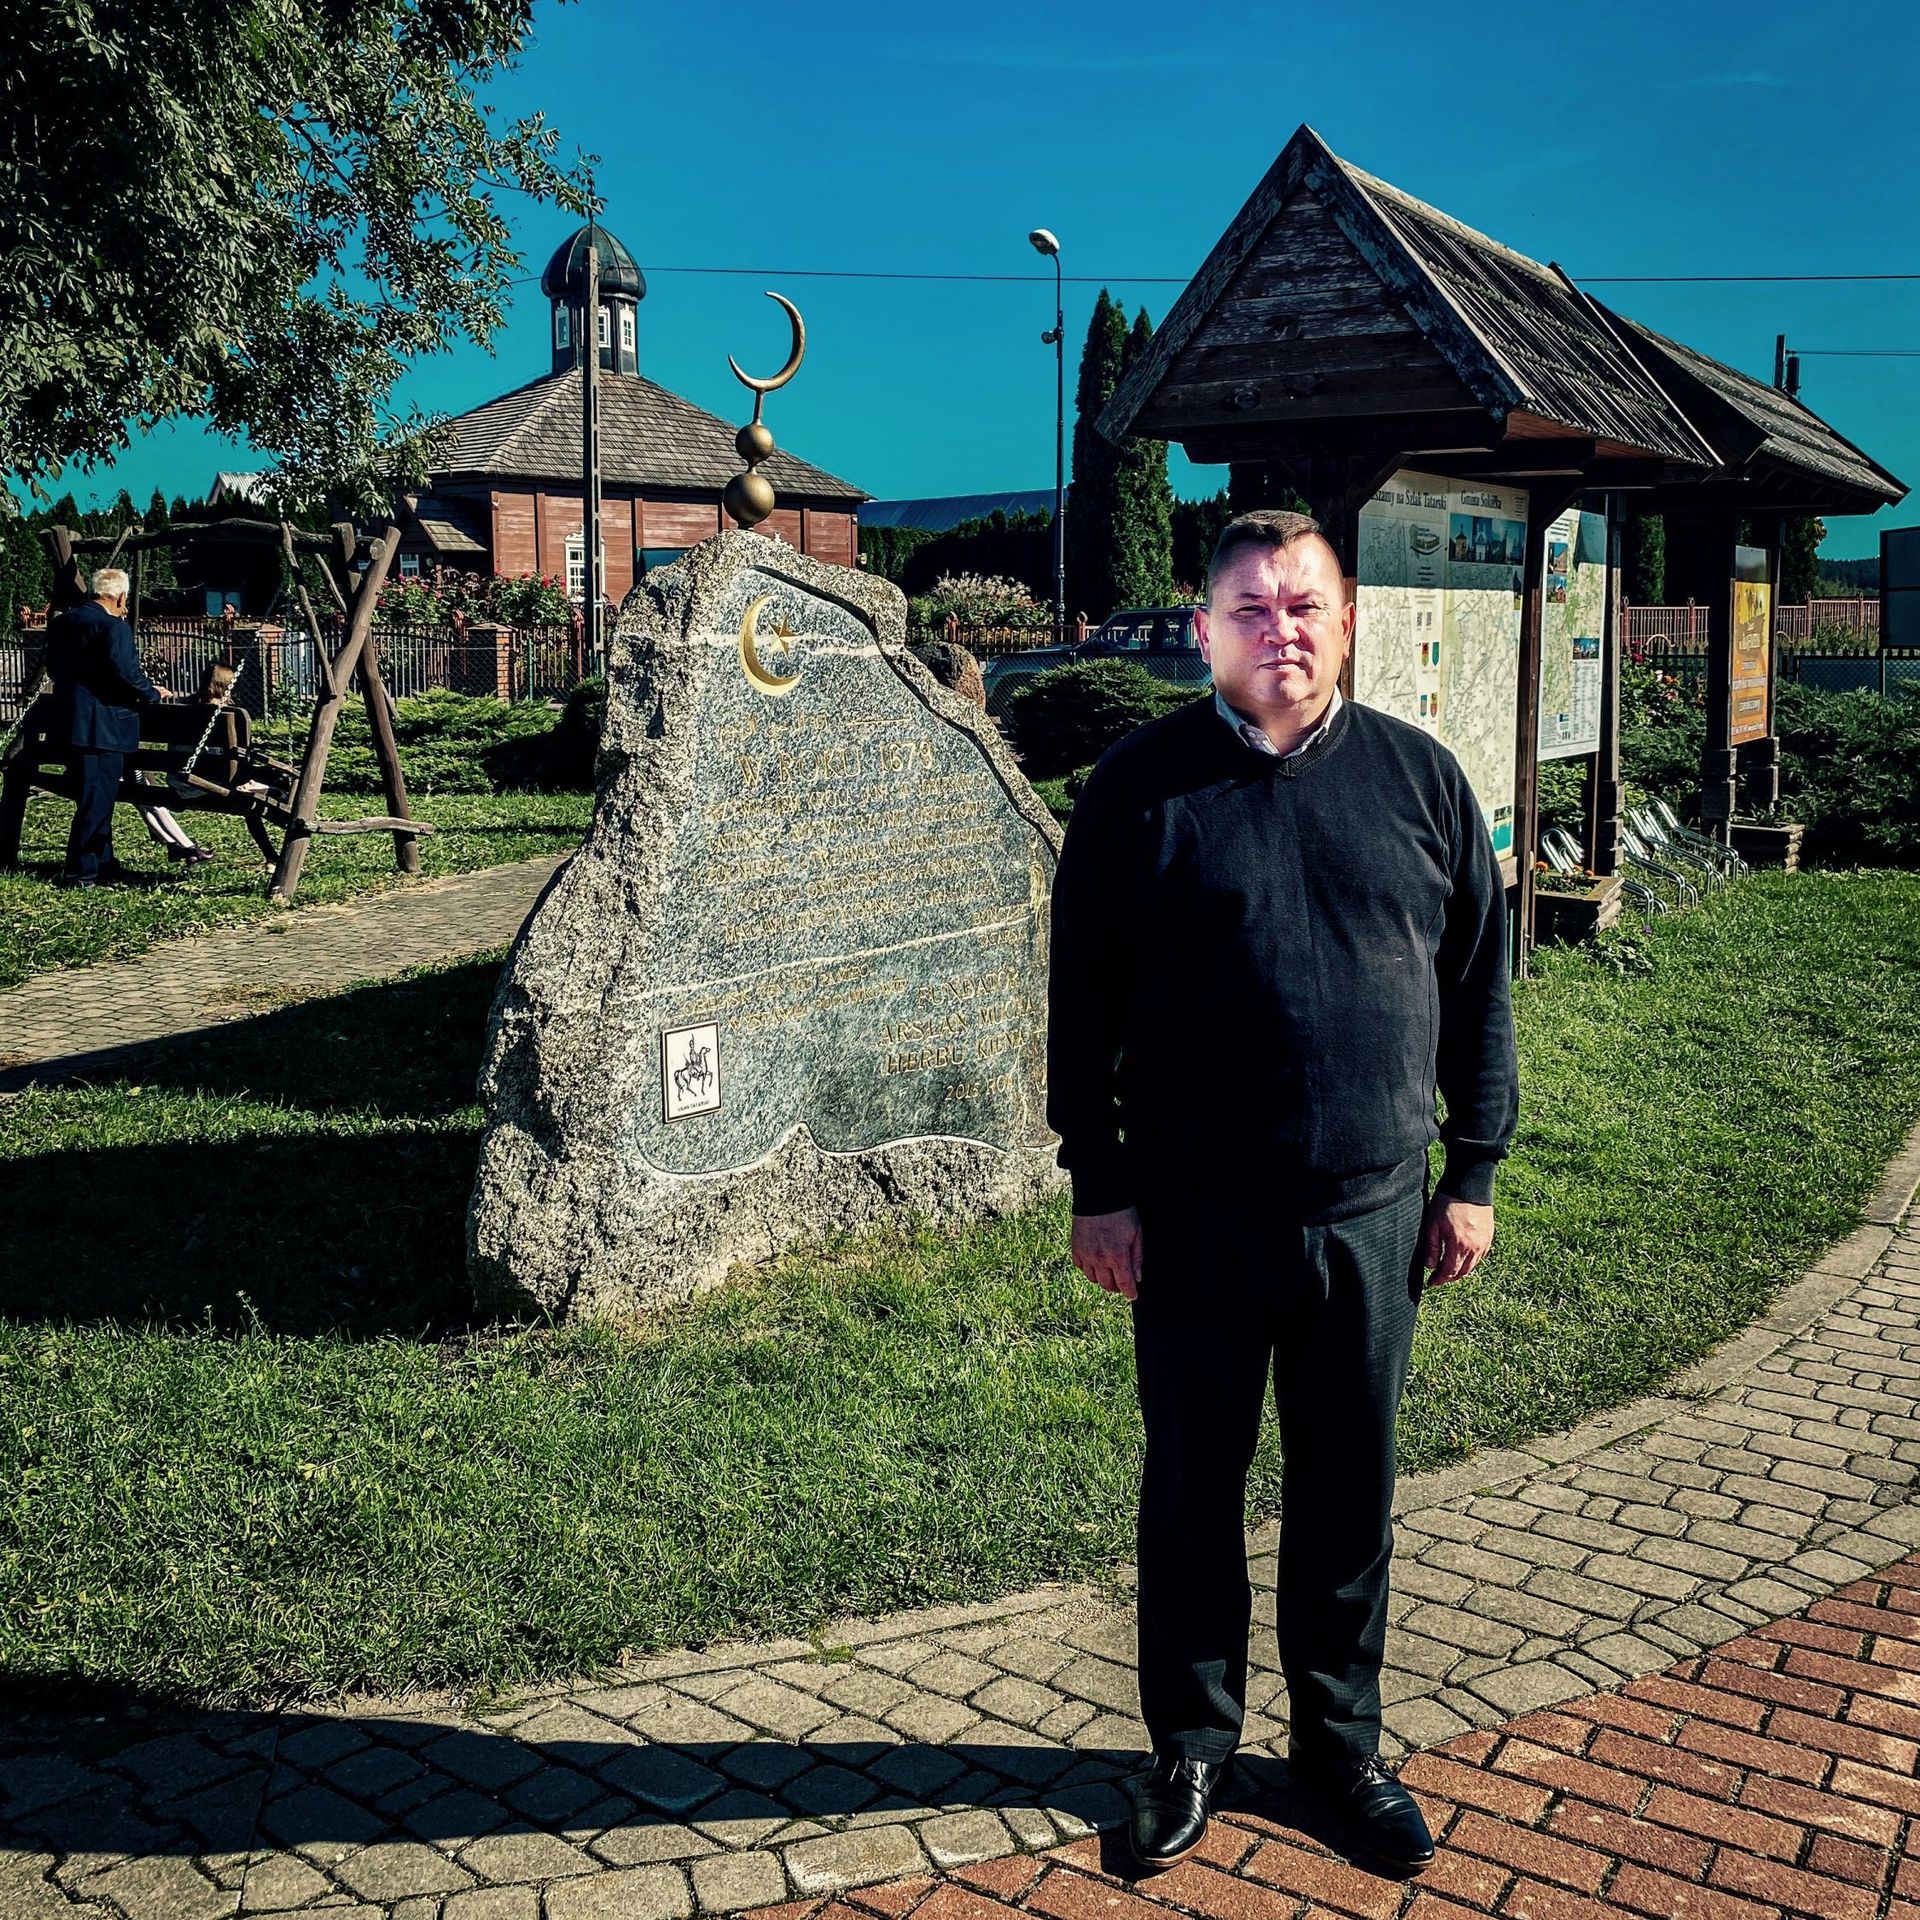 Maciej Szczesnowicz, chef de la communauté tatare, devant la mosquée de son village, Bohoniki.